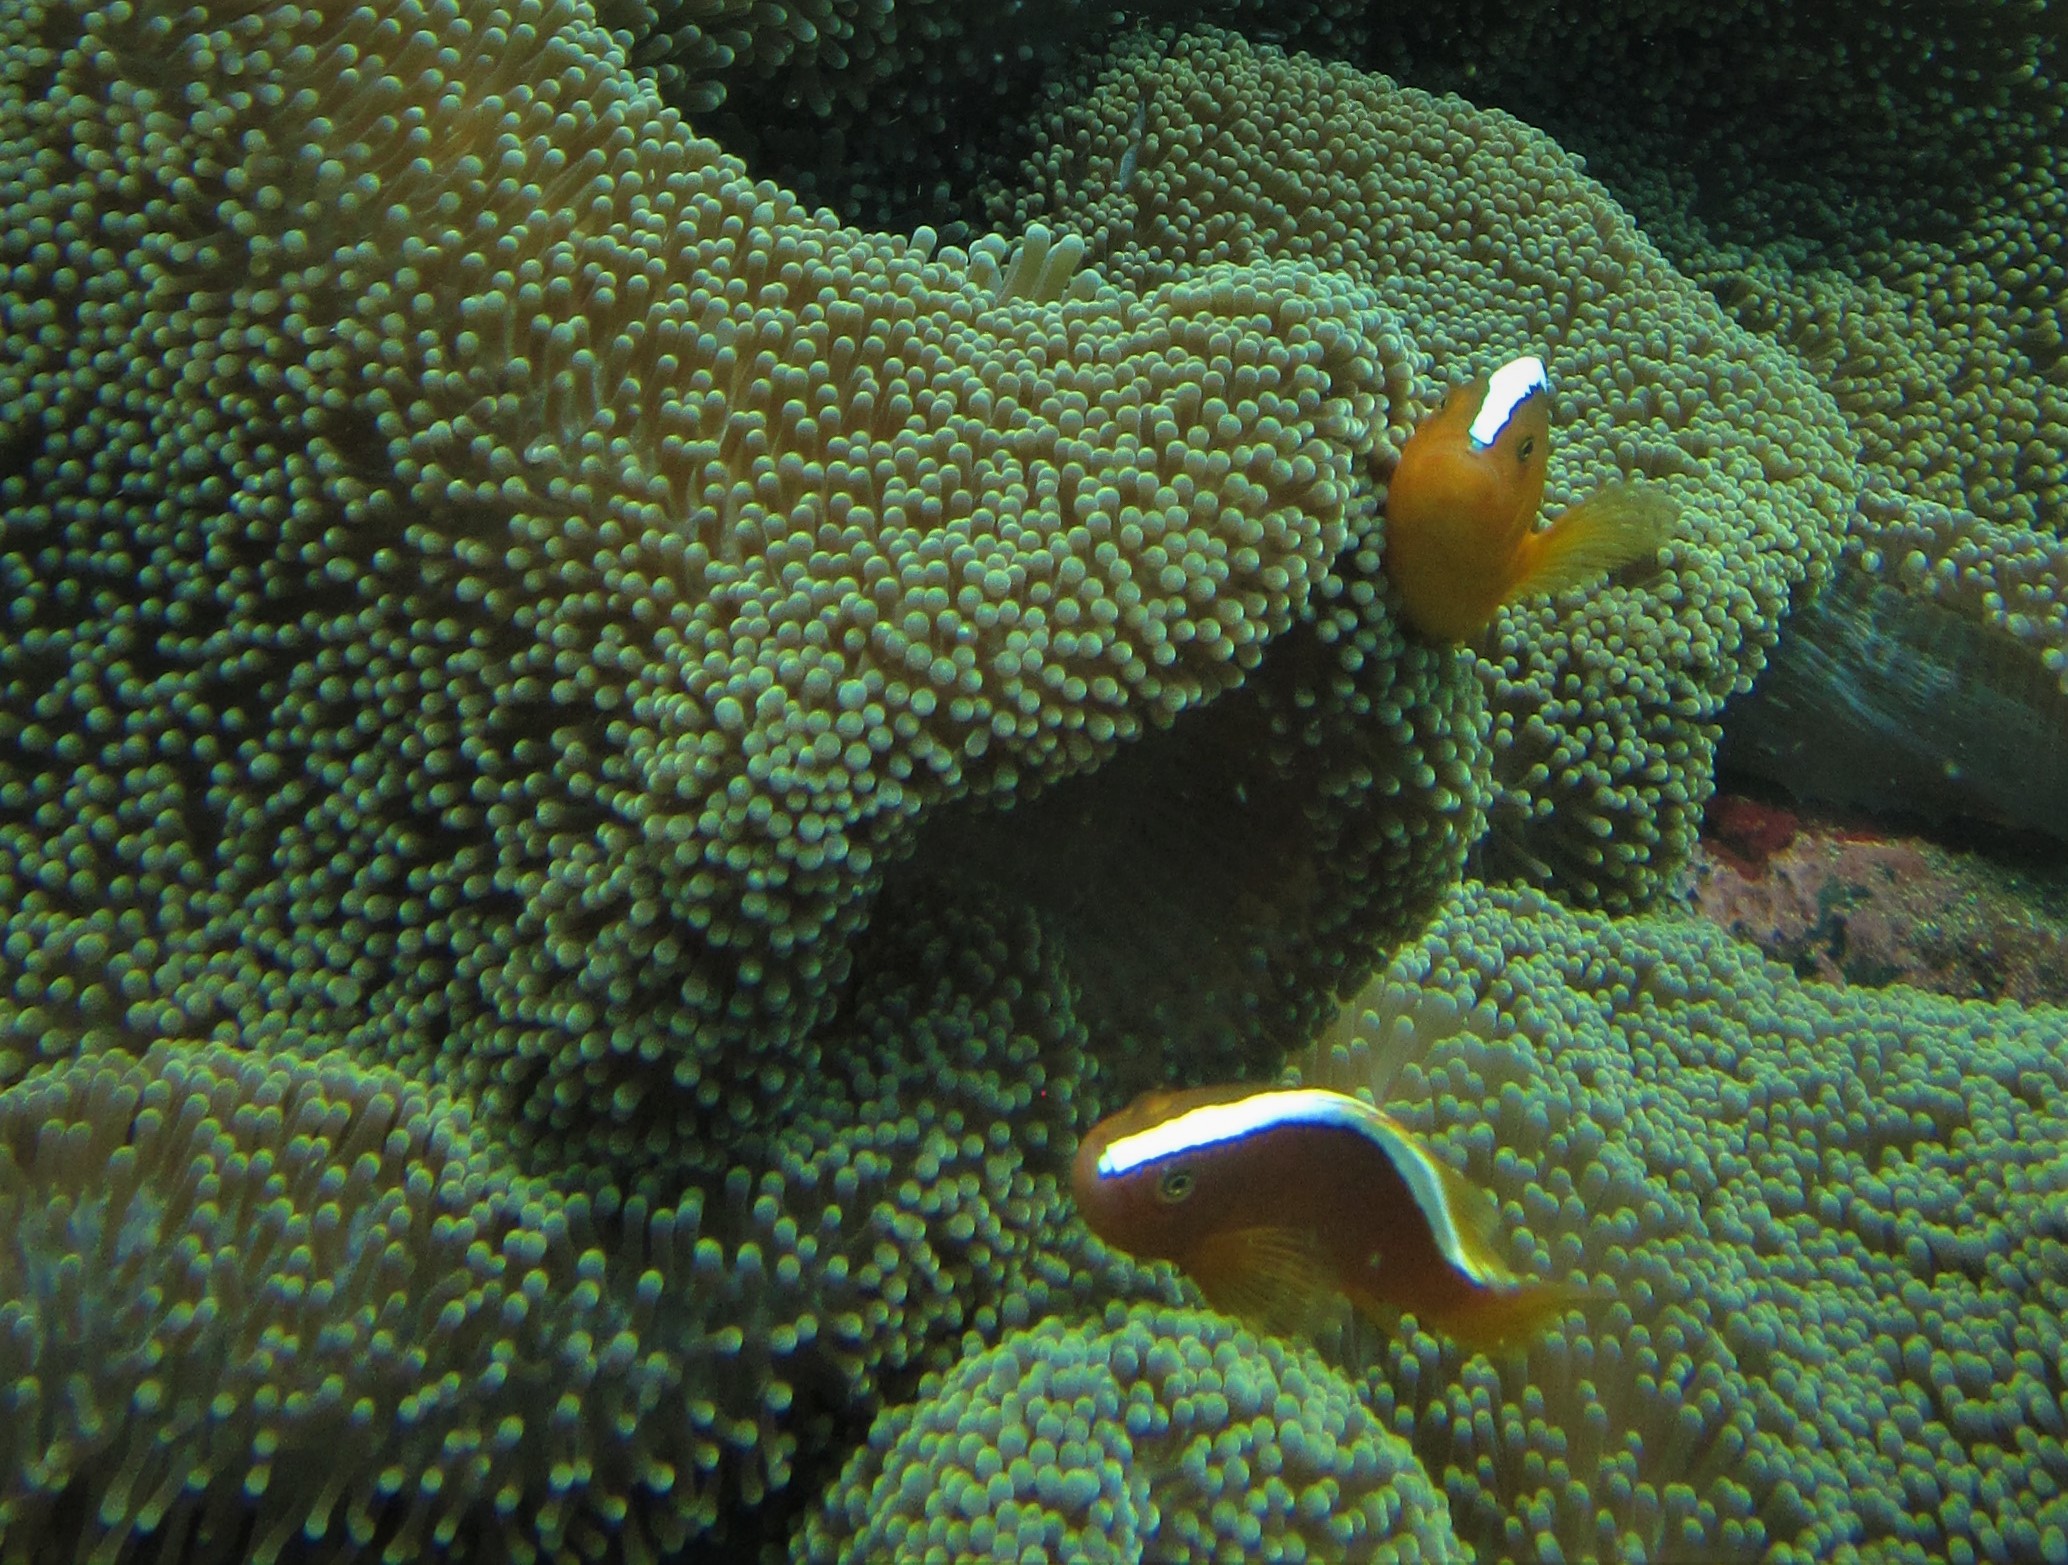 Biasanya si nemo ini ditemukan menempel di hard coral yang sehat. (foto: Graceywakary)